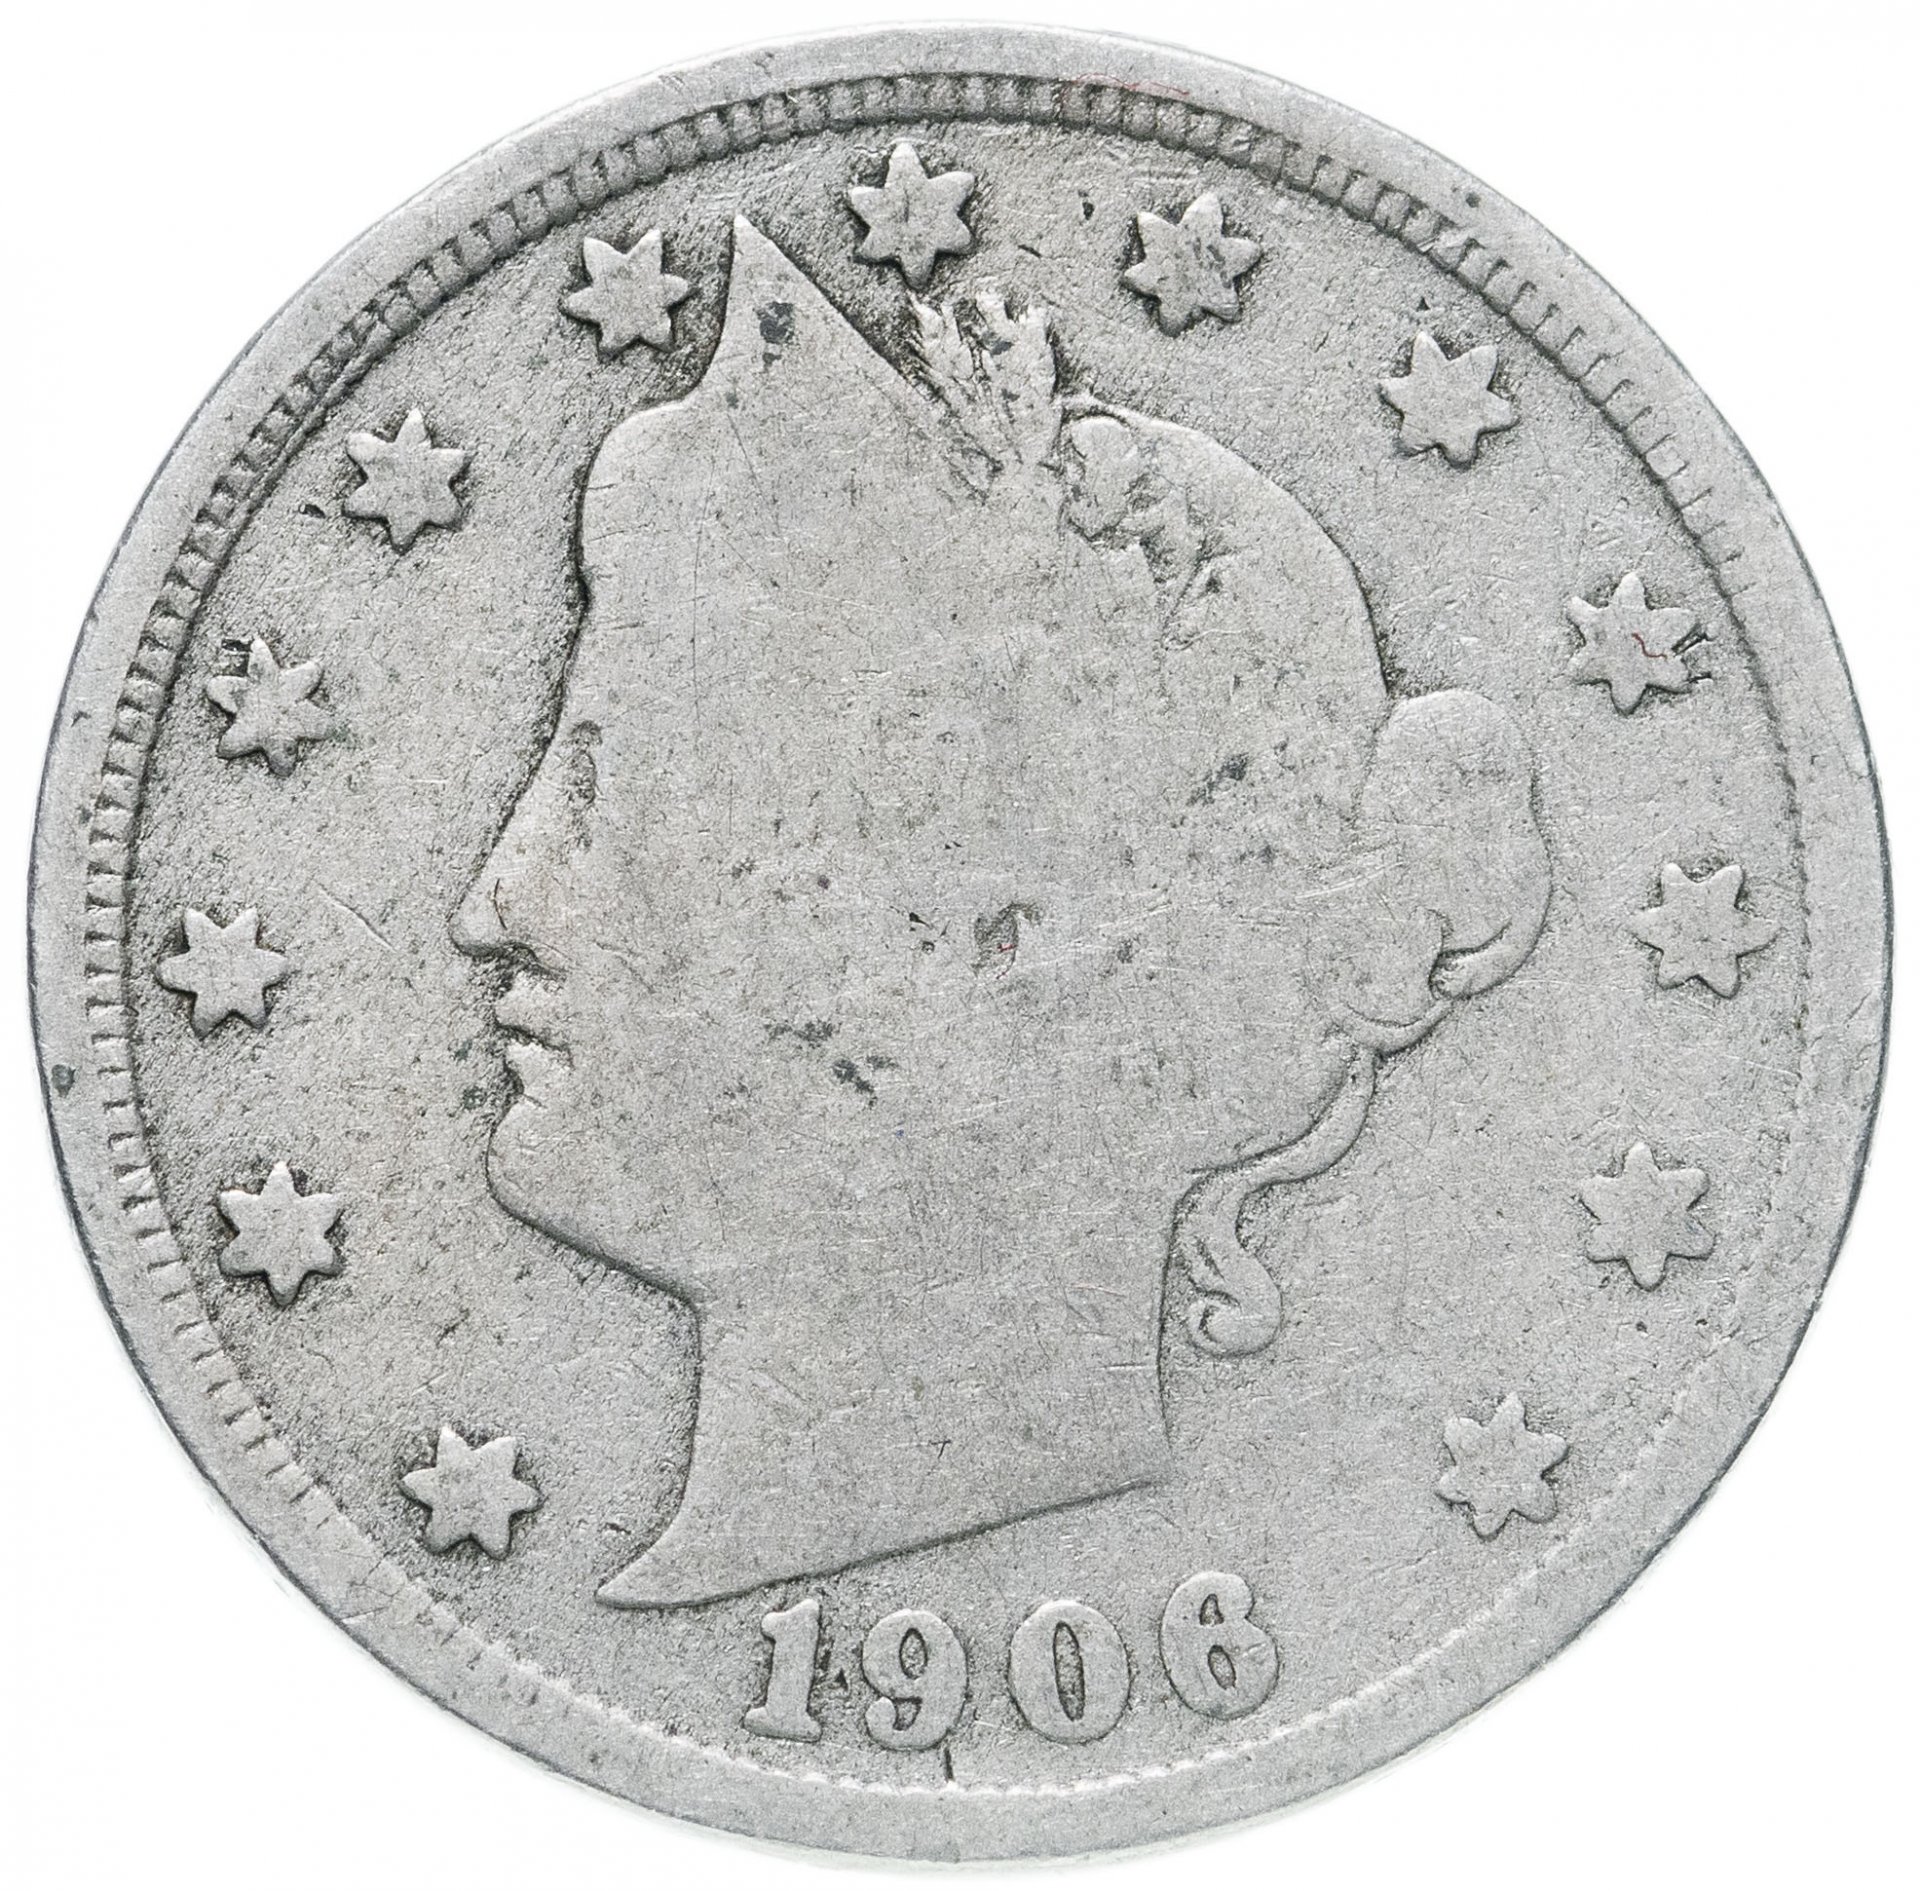 495 руб. США 5 центов, 1906. 15 Центов монета США. Американская монета серебряная с цифрами регионов. Цены на серебряные американские монеты 25 центов с колоколом.